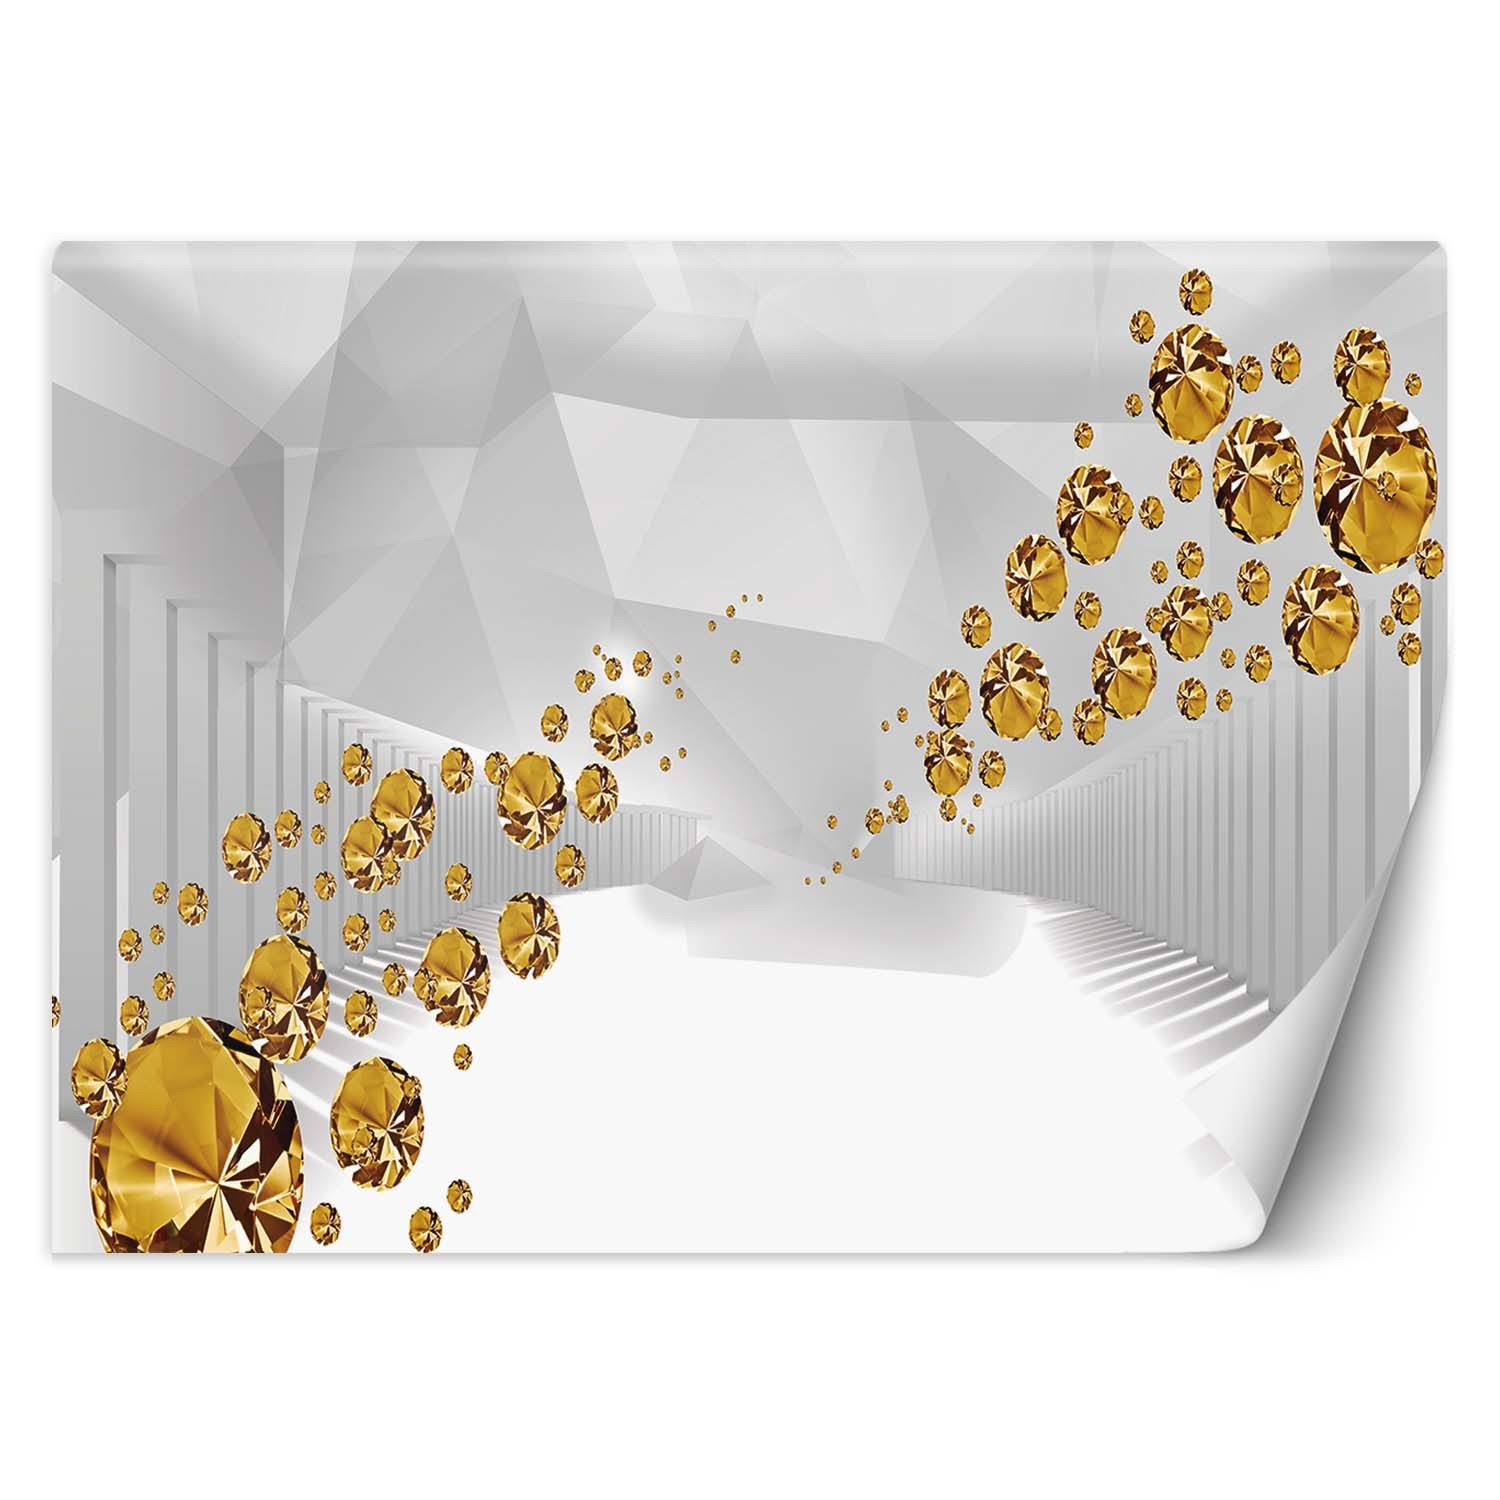 Trend24 – Behang – Gouden Stenen In Een Abstracte Tunnel – Behangpapier – Fotobehang 3D – Behang Woonkamer – 250x175x2 cm – Incl. behanglijm